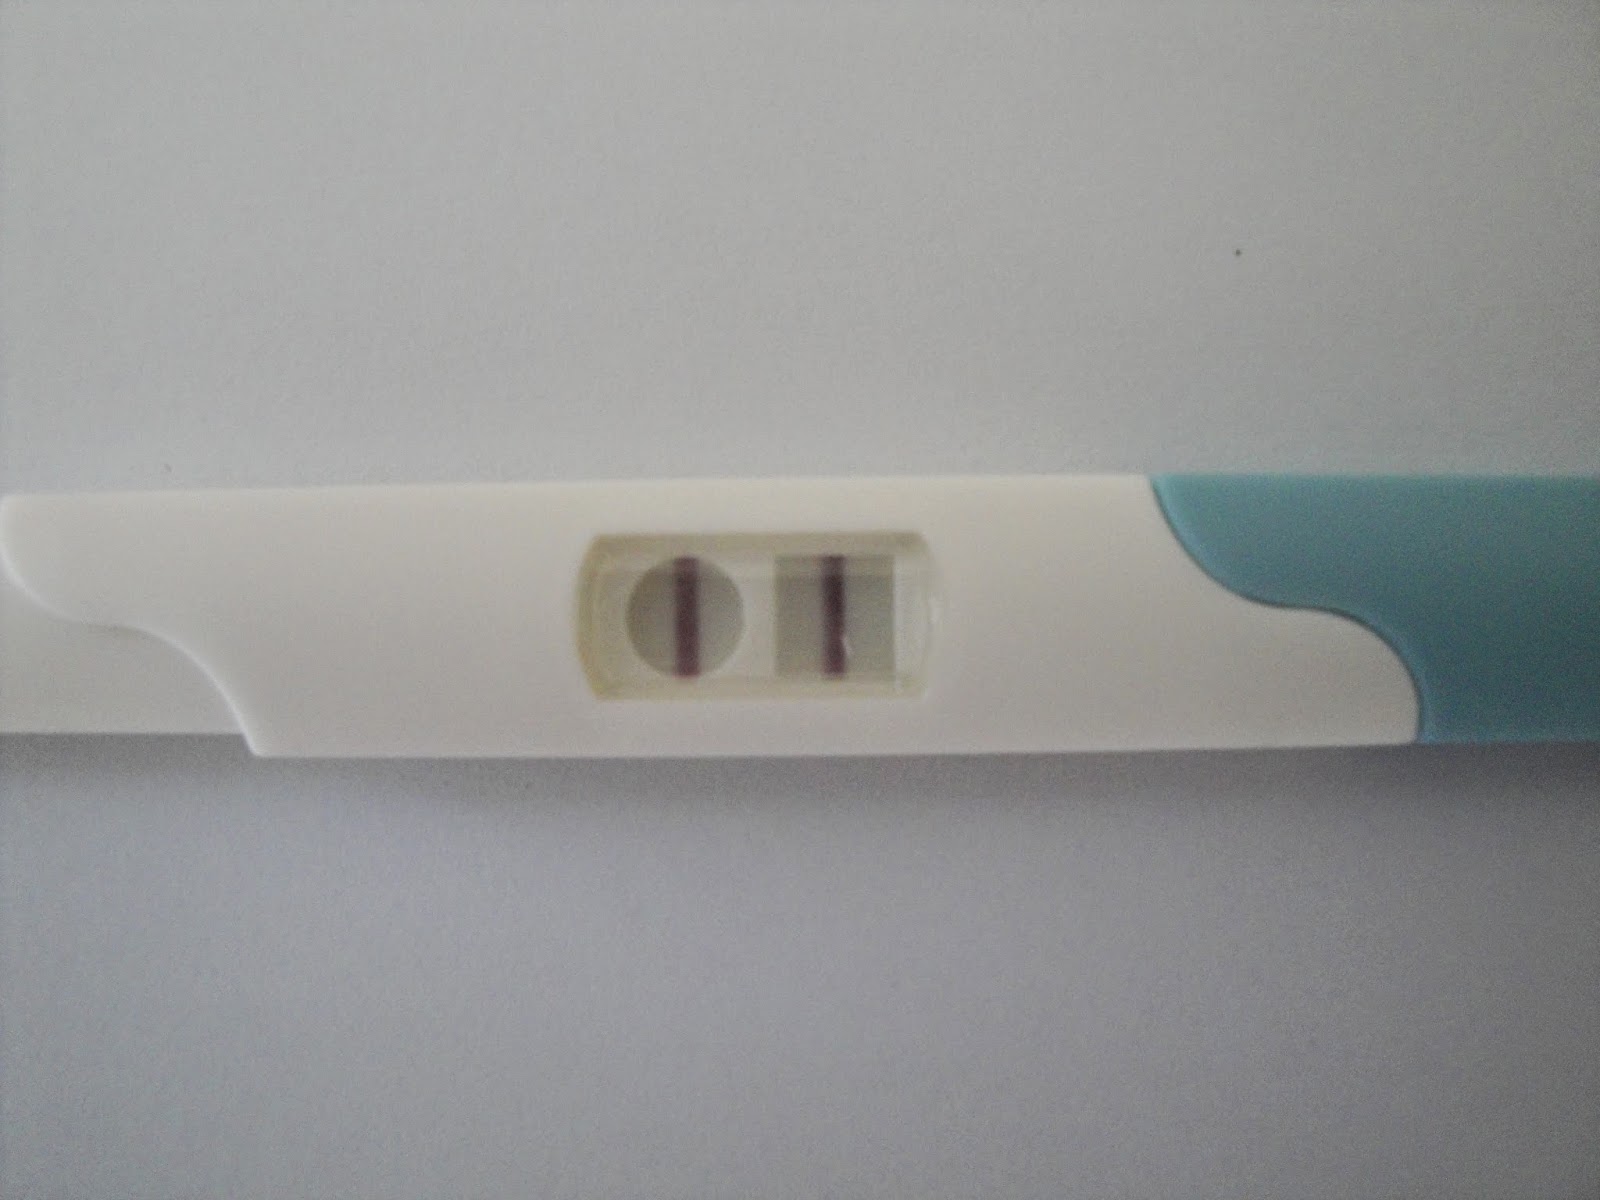 Teste de gravidez positivo (dois traços)